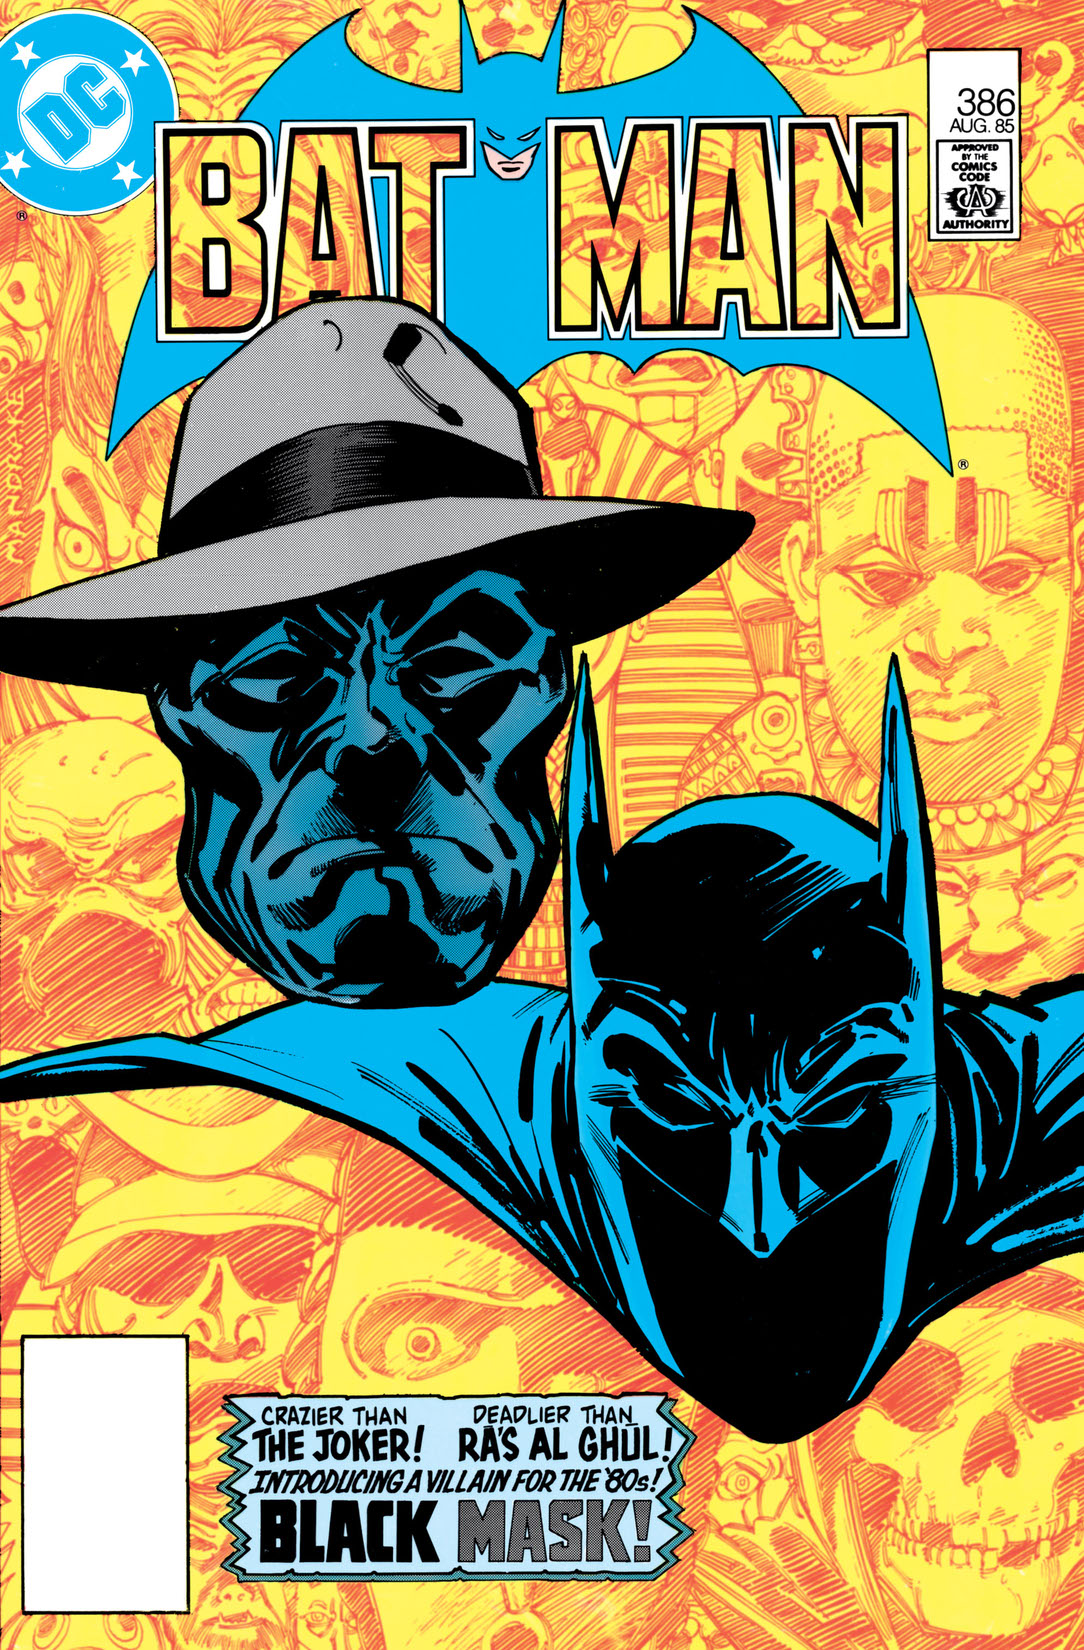 Batman (1940-) #386 preview images